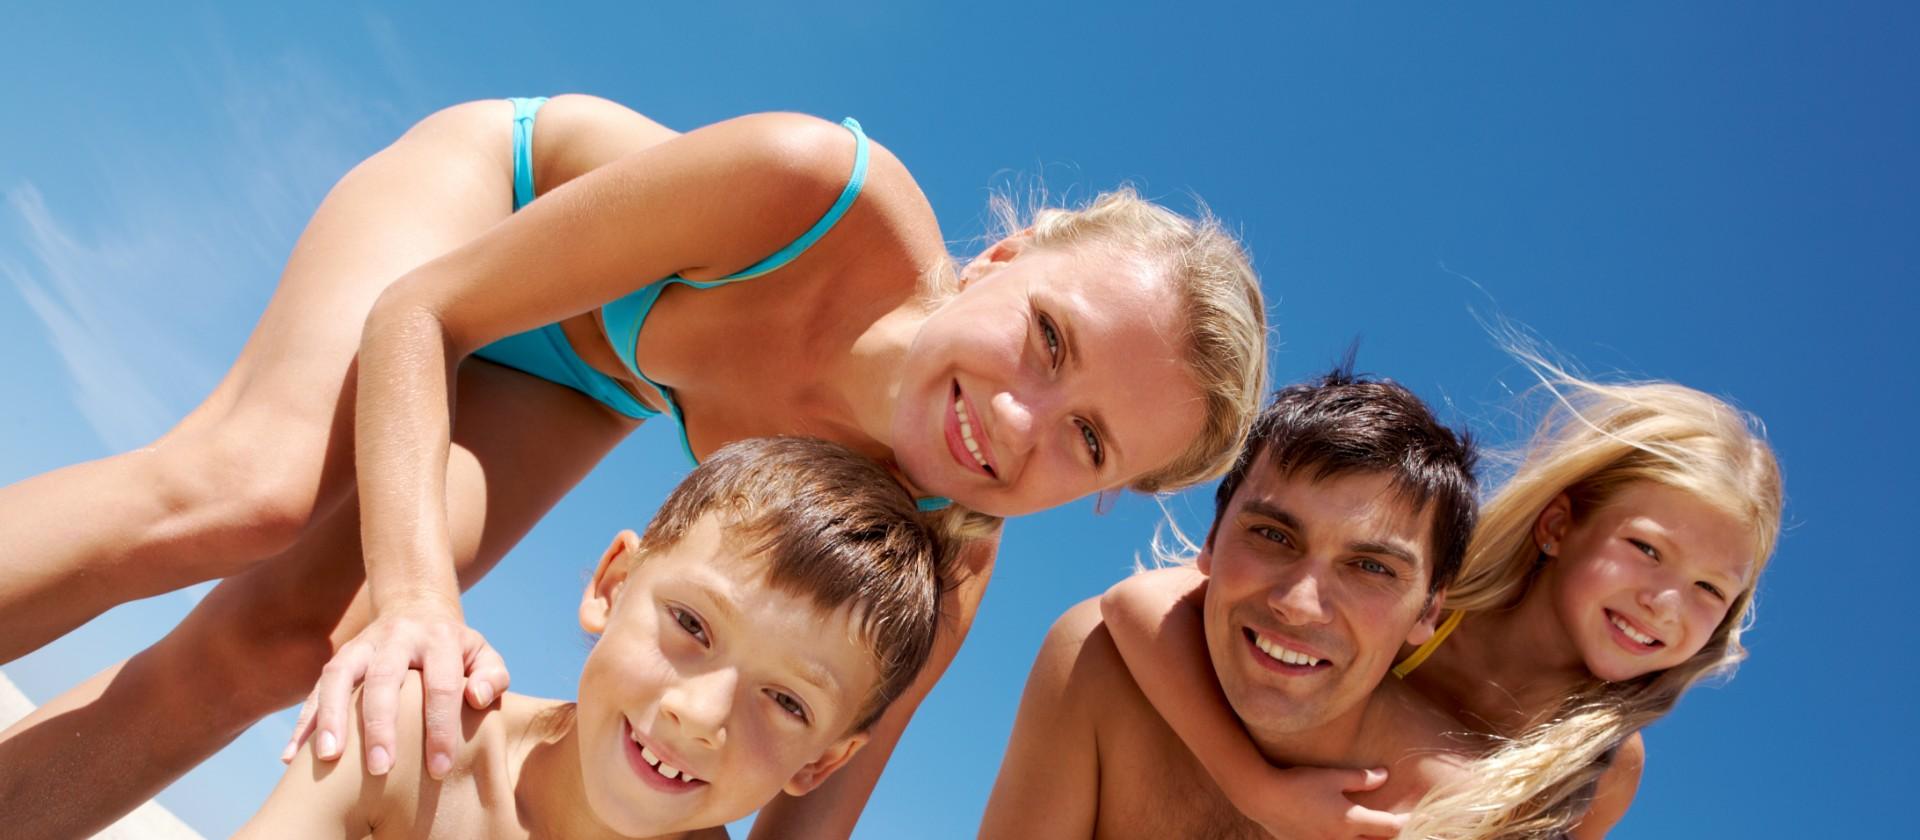 Famiglia felice in spiaggia con cielo azzurro.